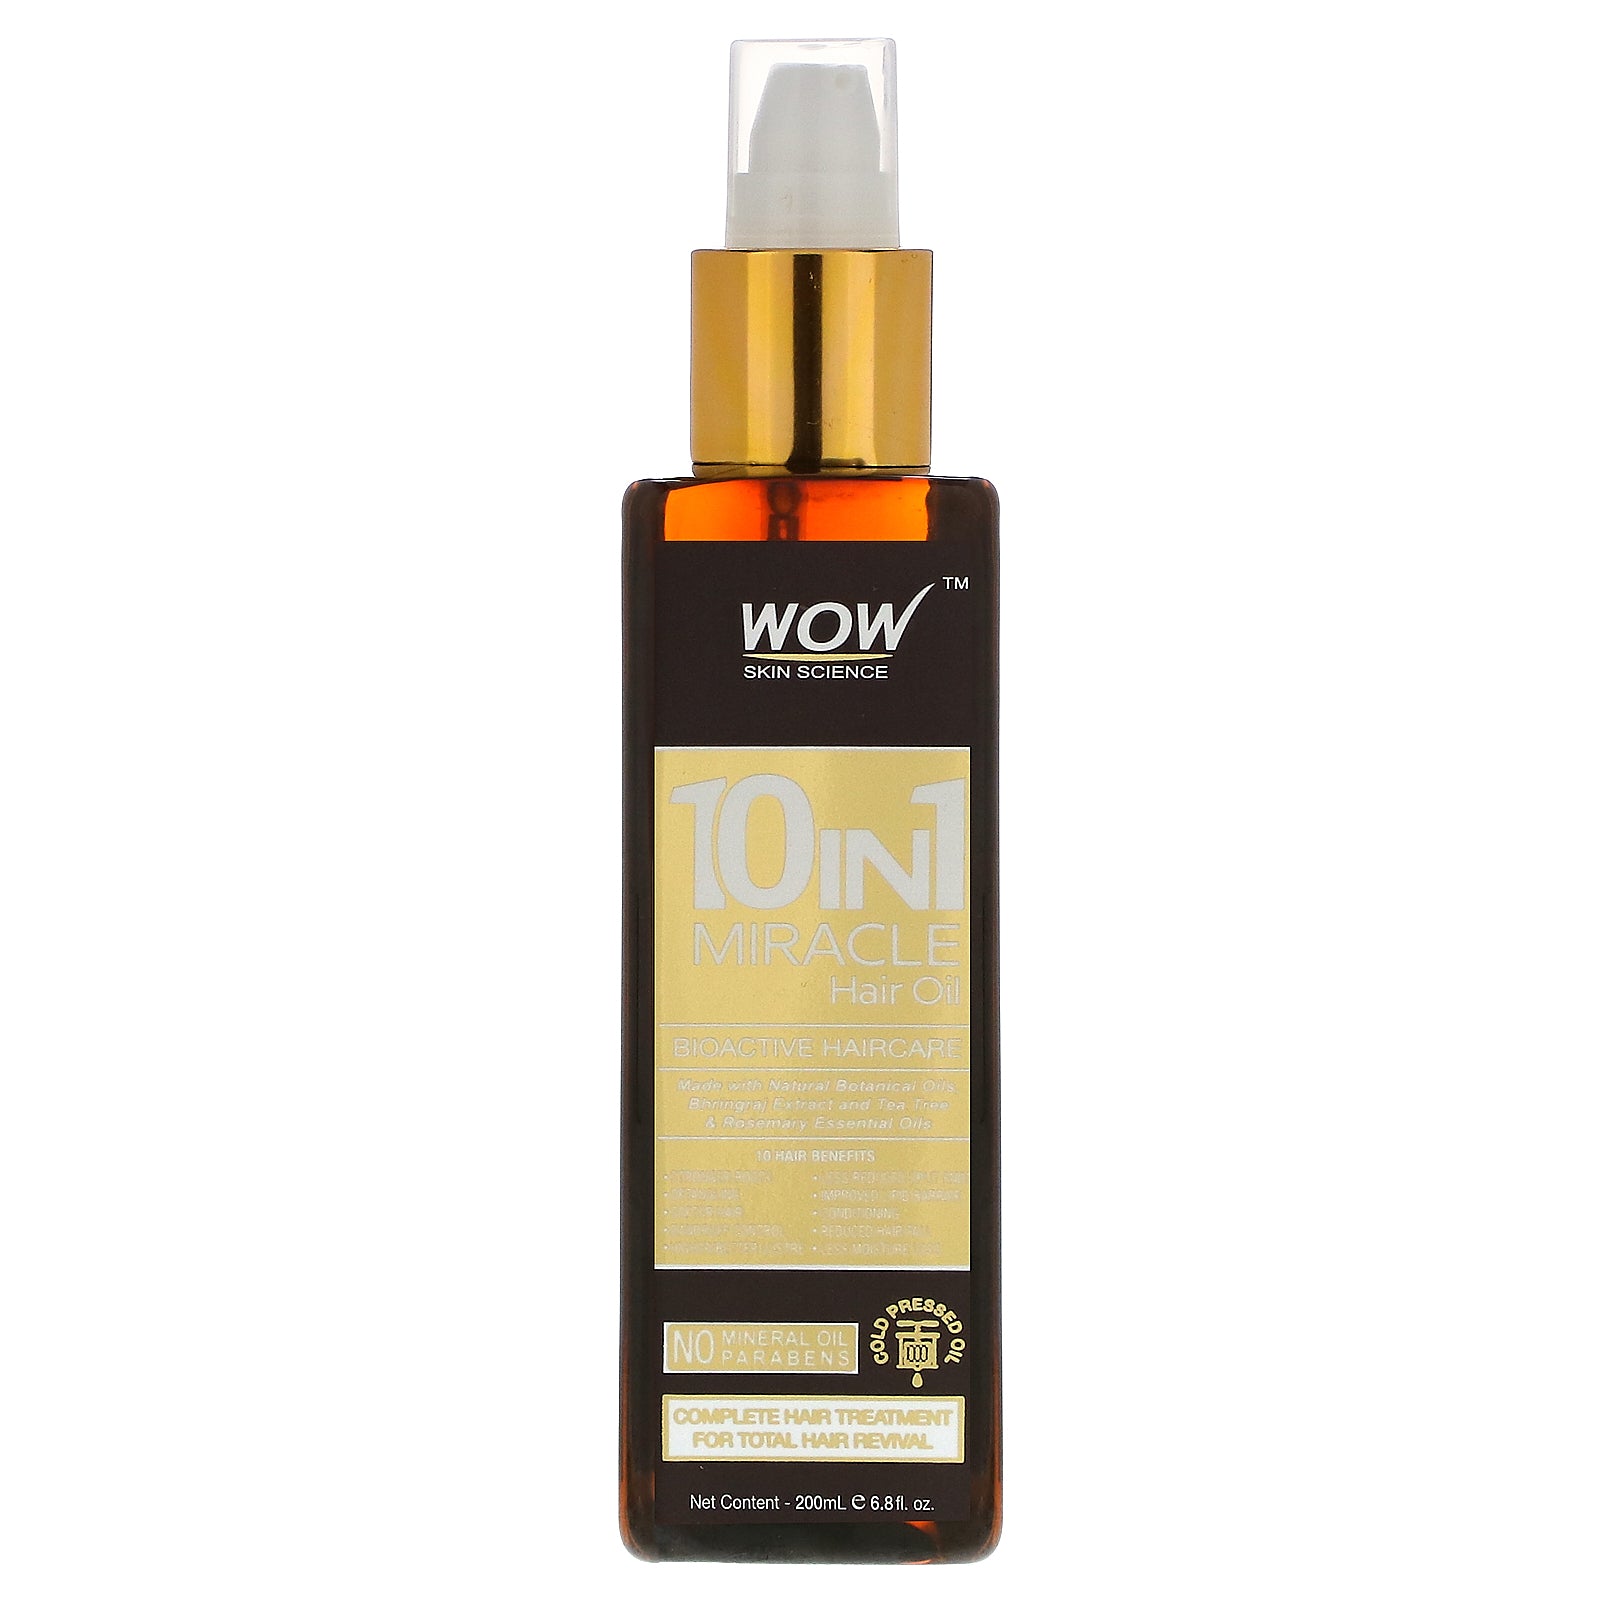 Wow Skin Science, 10 in 1 Miracle Hair Oil, 6.8 fl oz (200 ml)